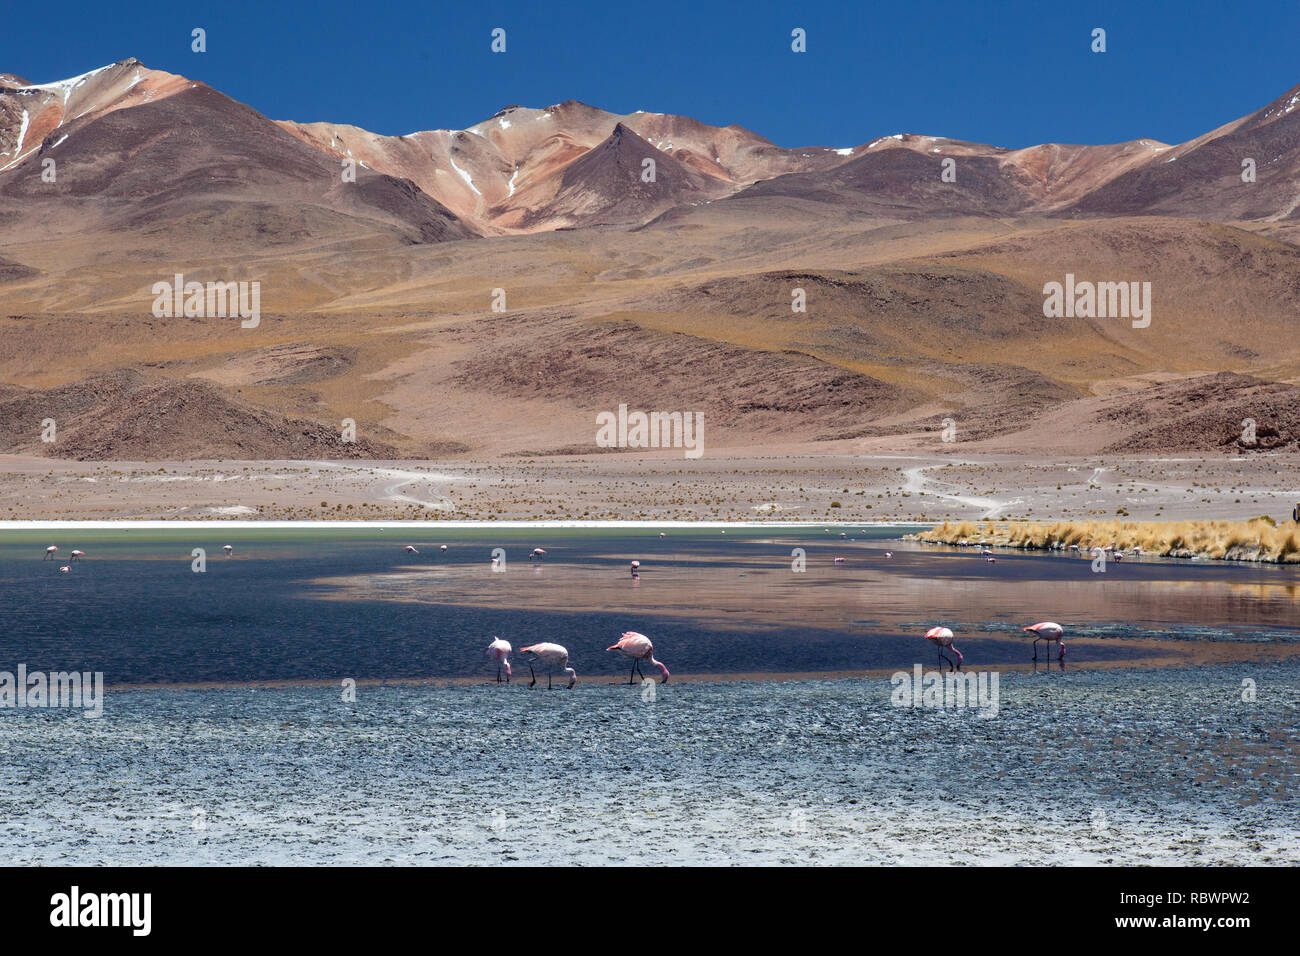 Alta en el altiplano boliviano las montañas ricas en minerales que muestran sus colores y flamencos perezosamente en el tóxico alimentan el lago de aguas abajo. Foto de stock